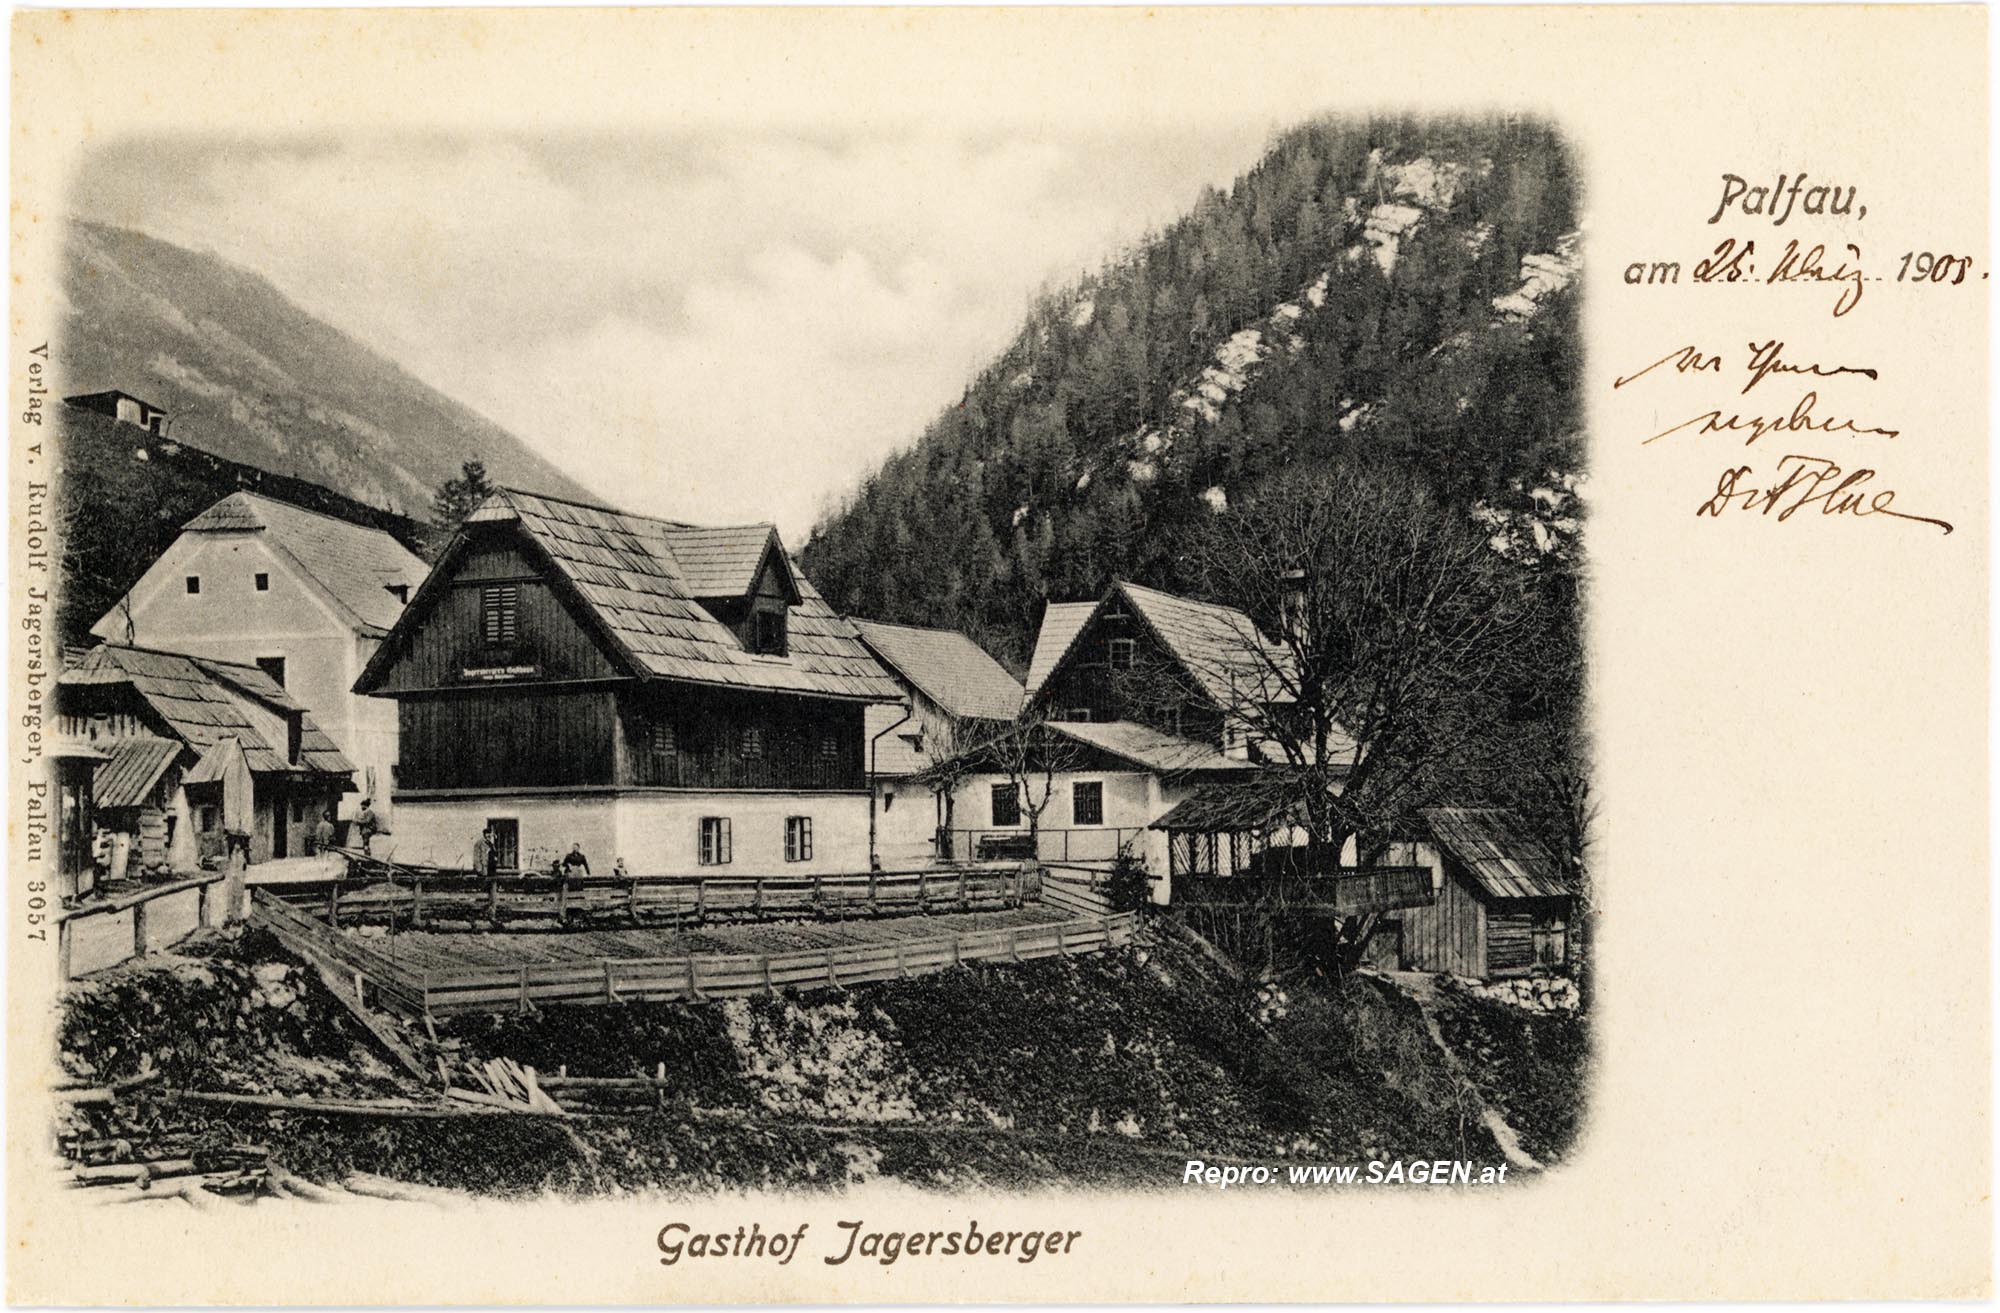 Gasthof Jagersberger, Palfau